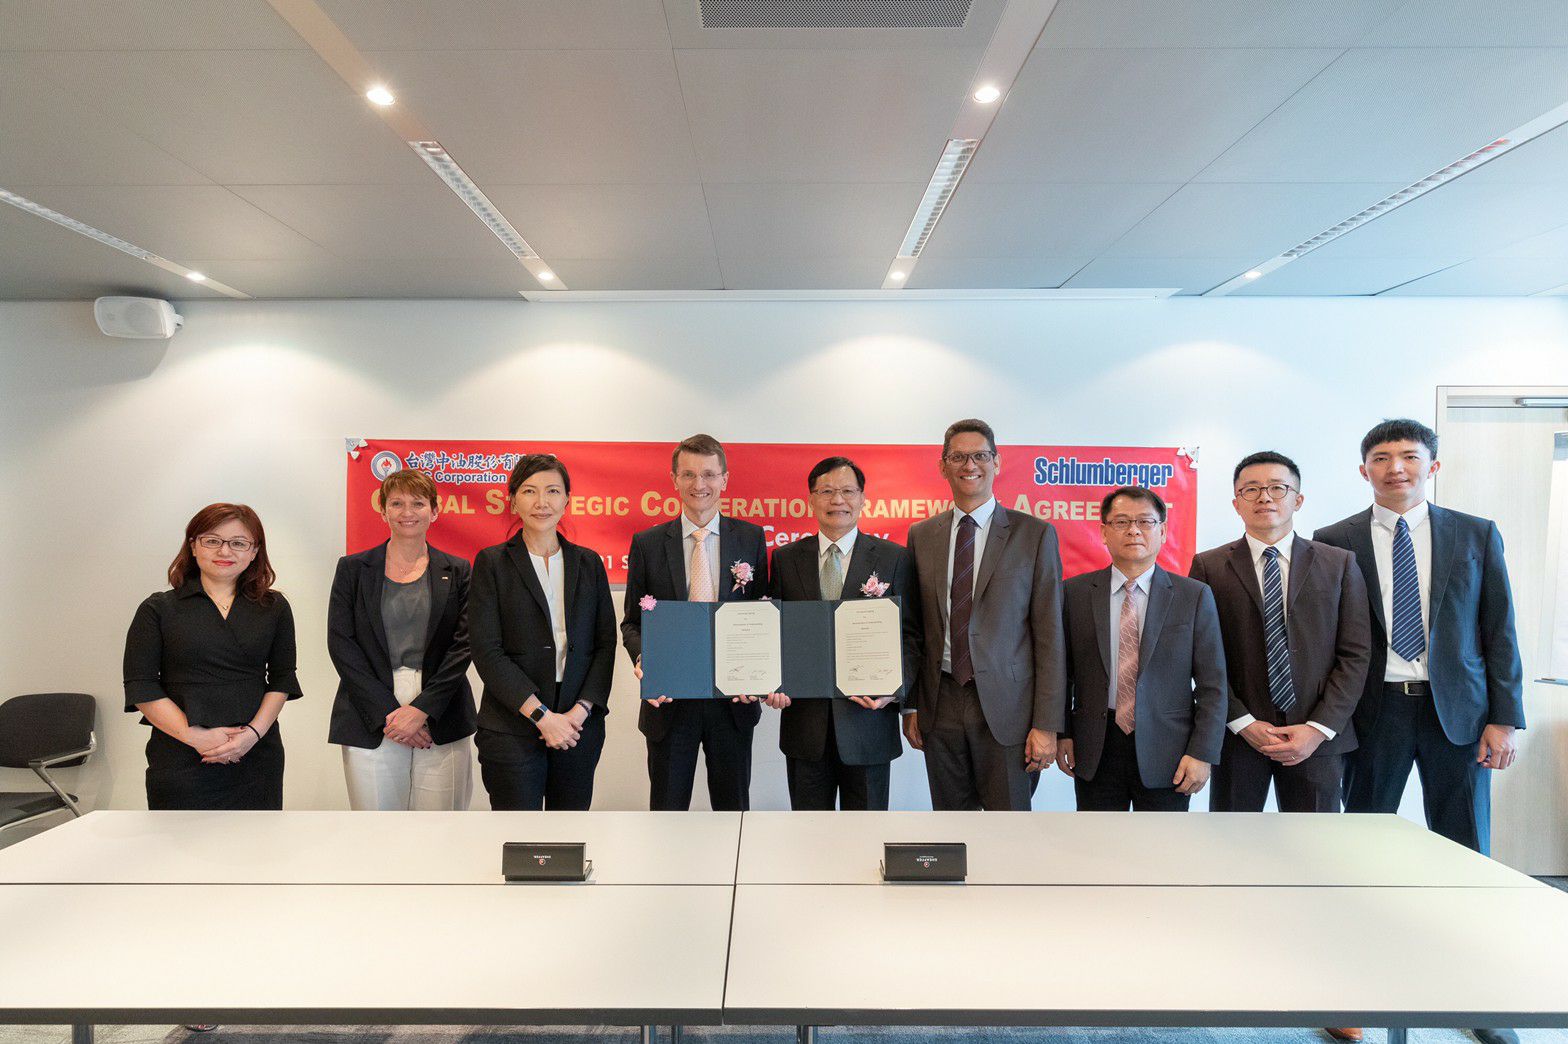 台灣中油與施蘭卜吉公司簽署全球戰略合作框架協議 在能源、數位轉型與碳中和等領域相互合作